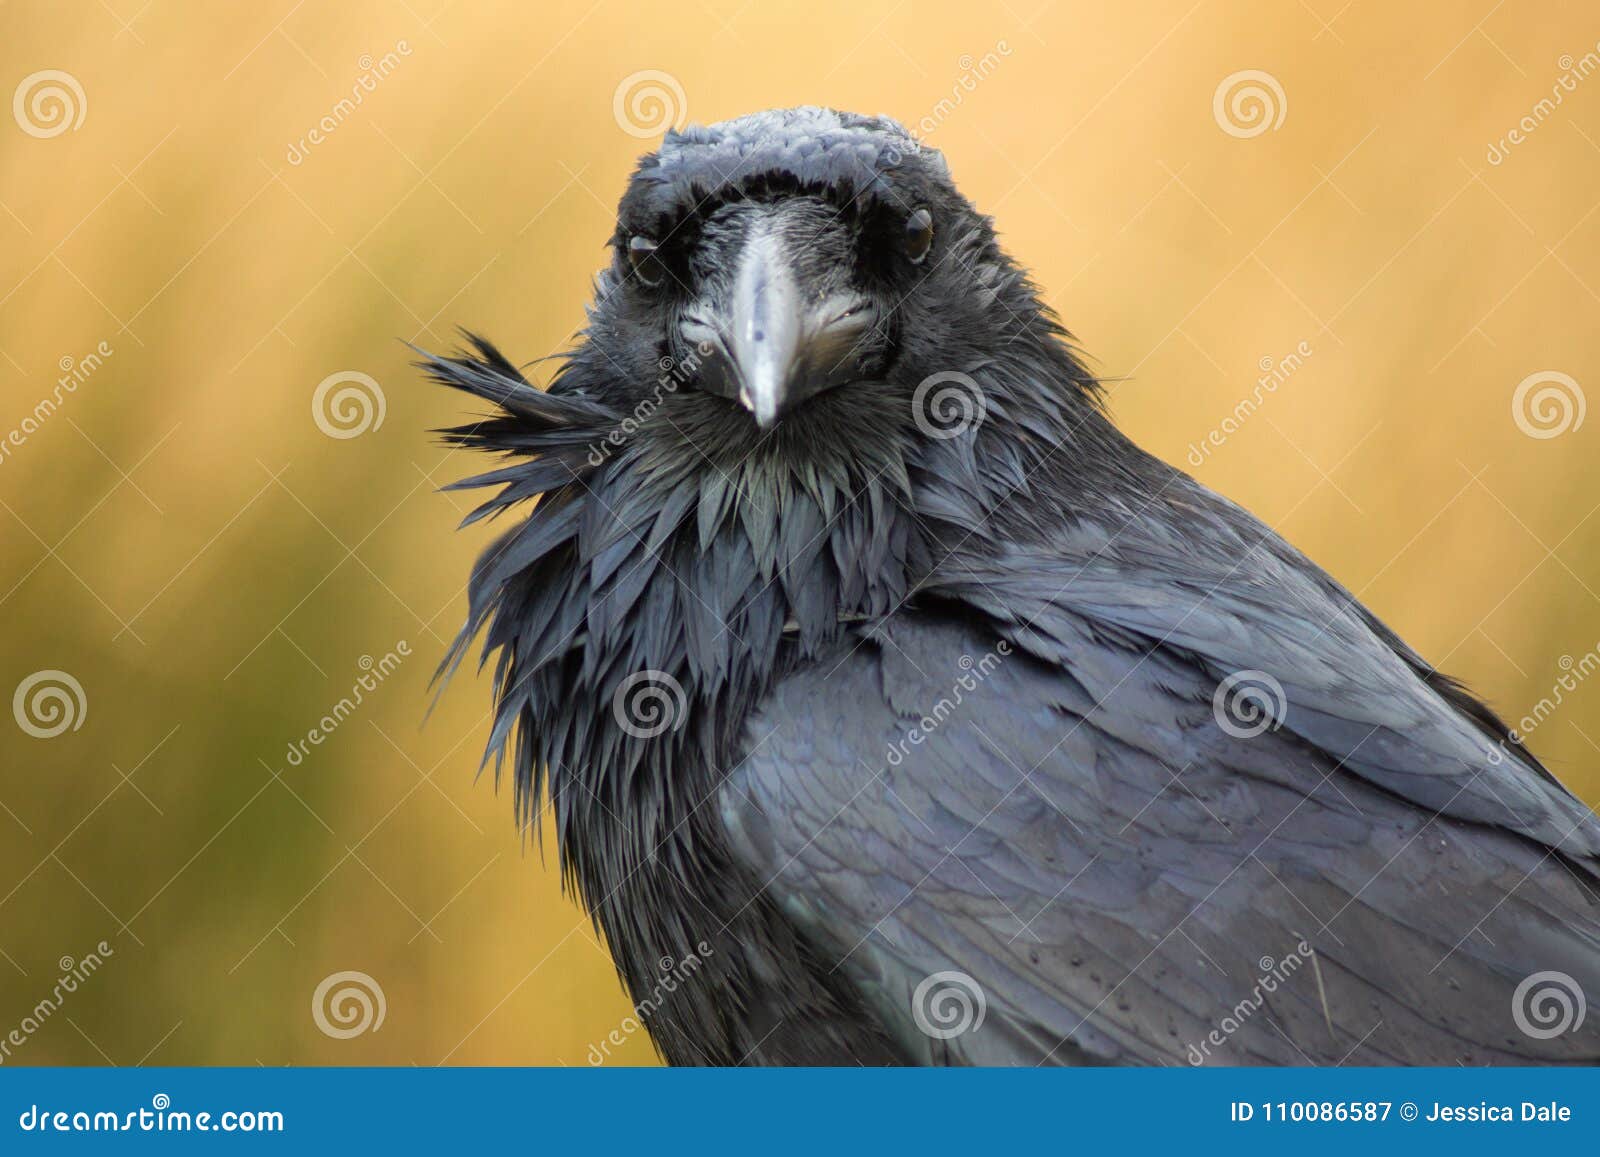 a raven in dartmoor, uk